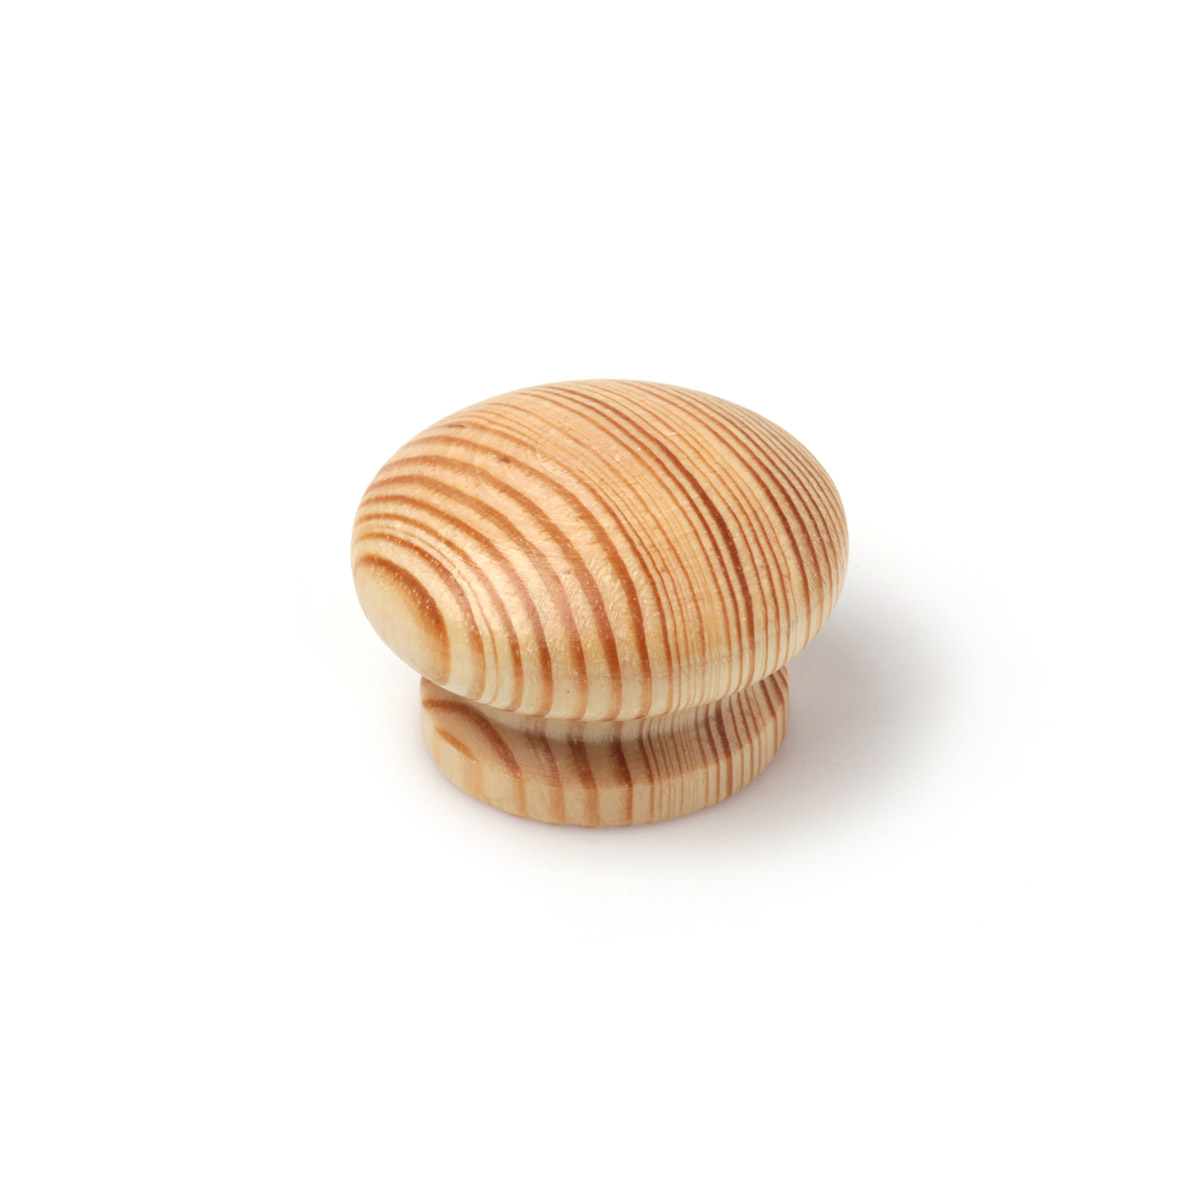 Pomo en madera con acabado pino transparante., dimensiones: 44x44x30mm, Ø: 44mm